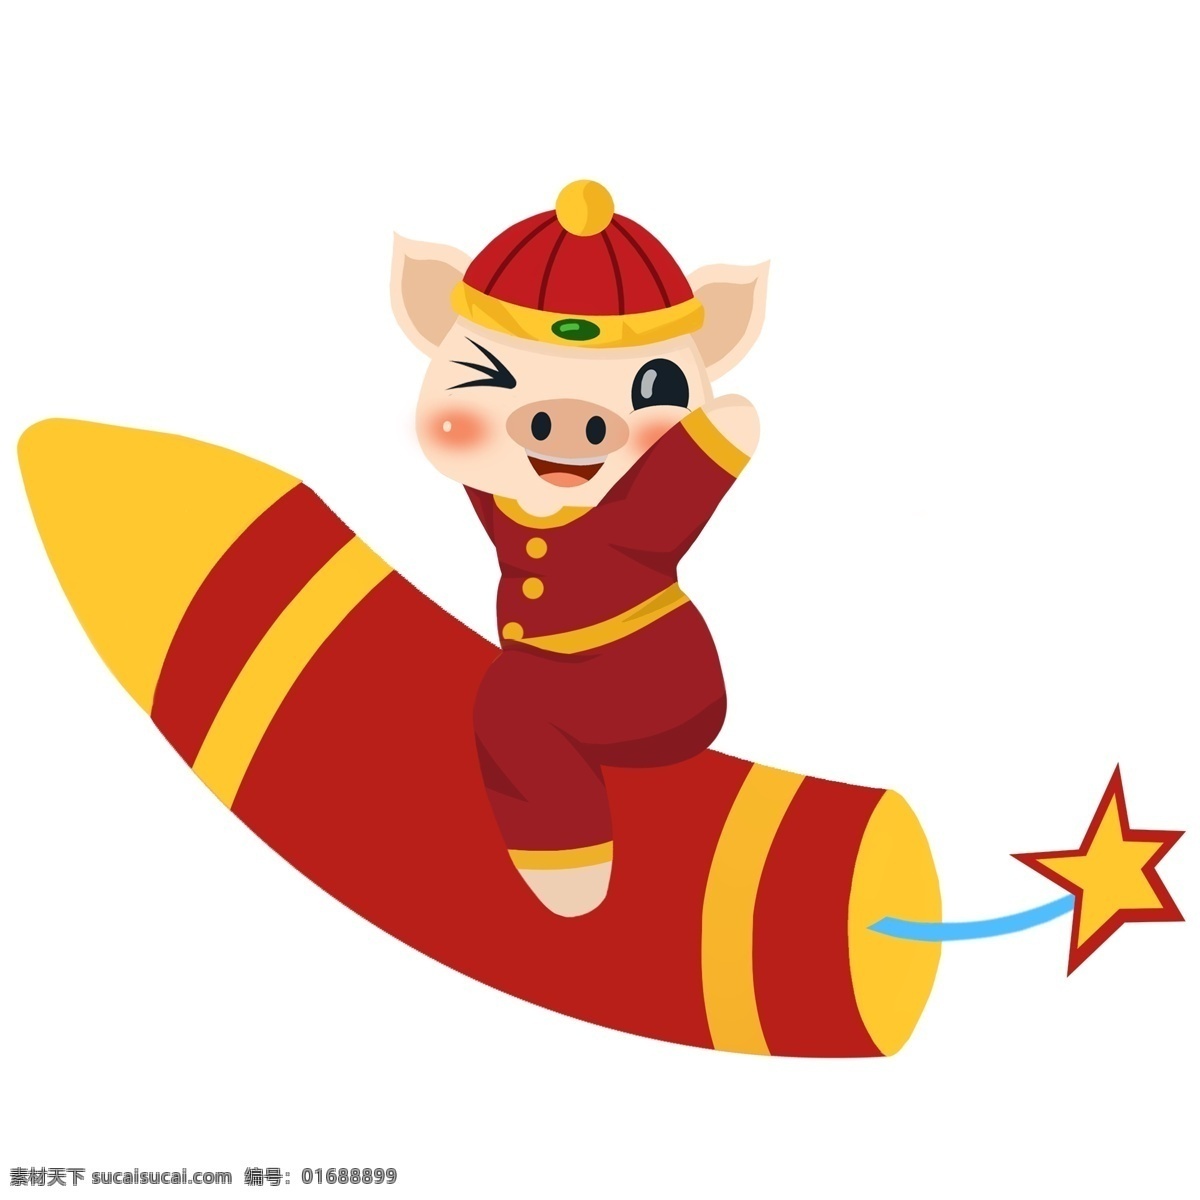 卡通 可爱 小 猪 手绘 新春 卡通动物 喜庆 吉祥 吉祥物 猪年 2019年 可爱小猪拜年 可爱动物 放鞭炮